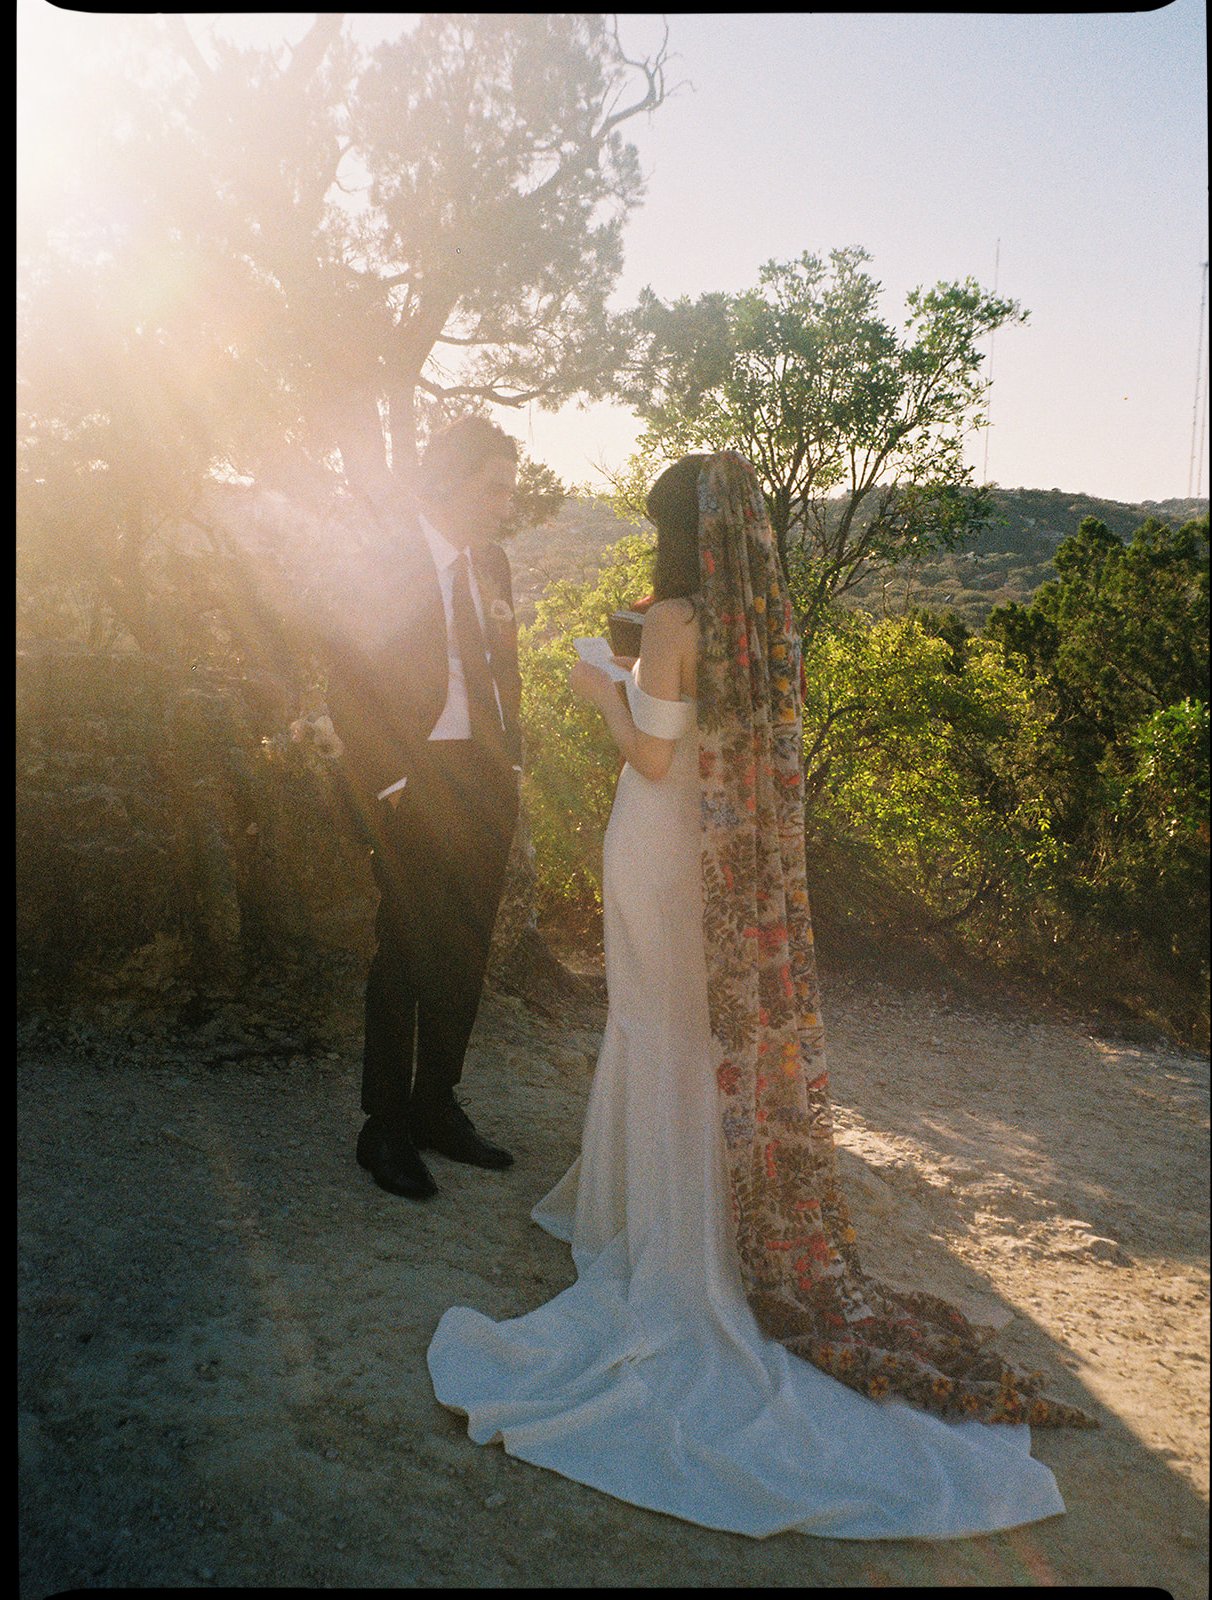 Best-Austin-Wedding-Photographers-Elopement-Film-35mm-Asheville-Santa-Barbara-Laguna-Gloria-11.jpg